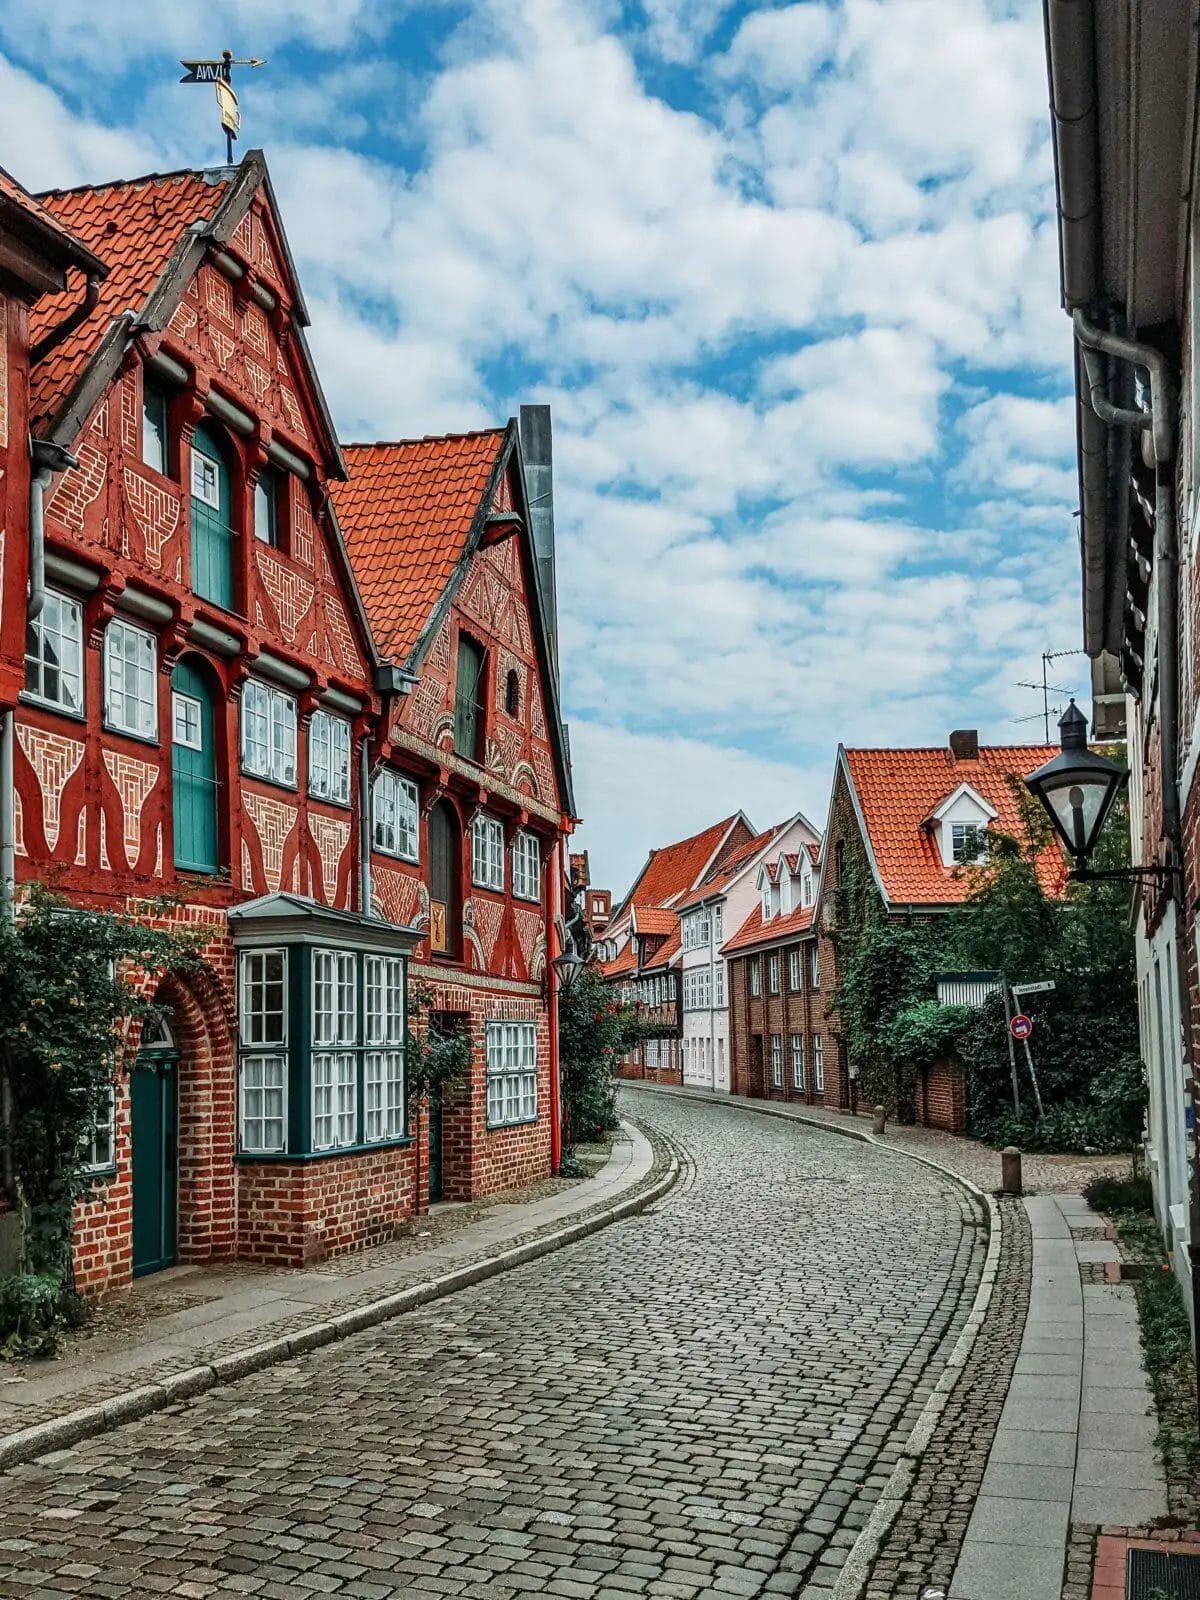 Strasse mit Fachwerkhäusern - Schöne Städte Deutschland für einen Städtetrip